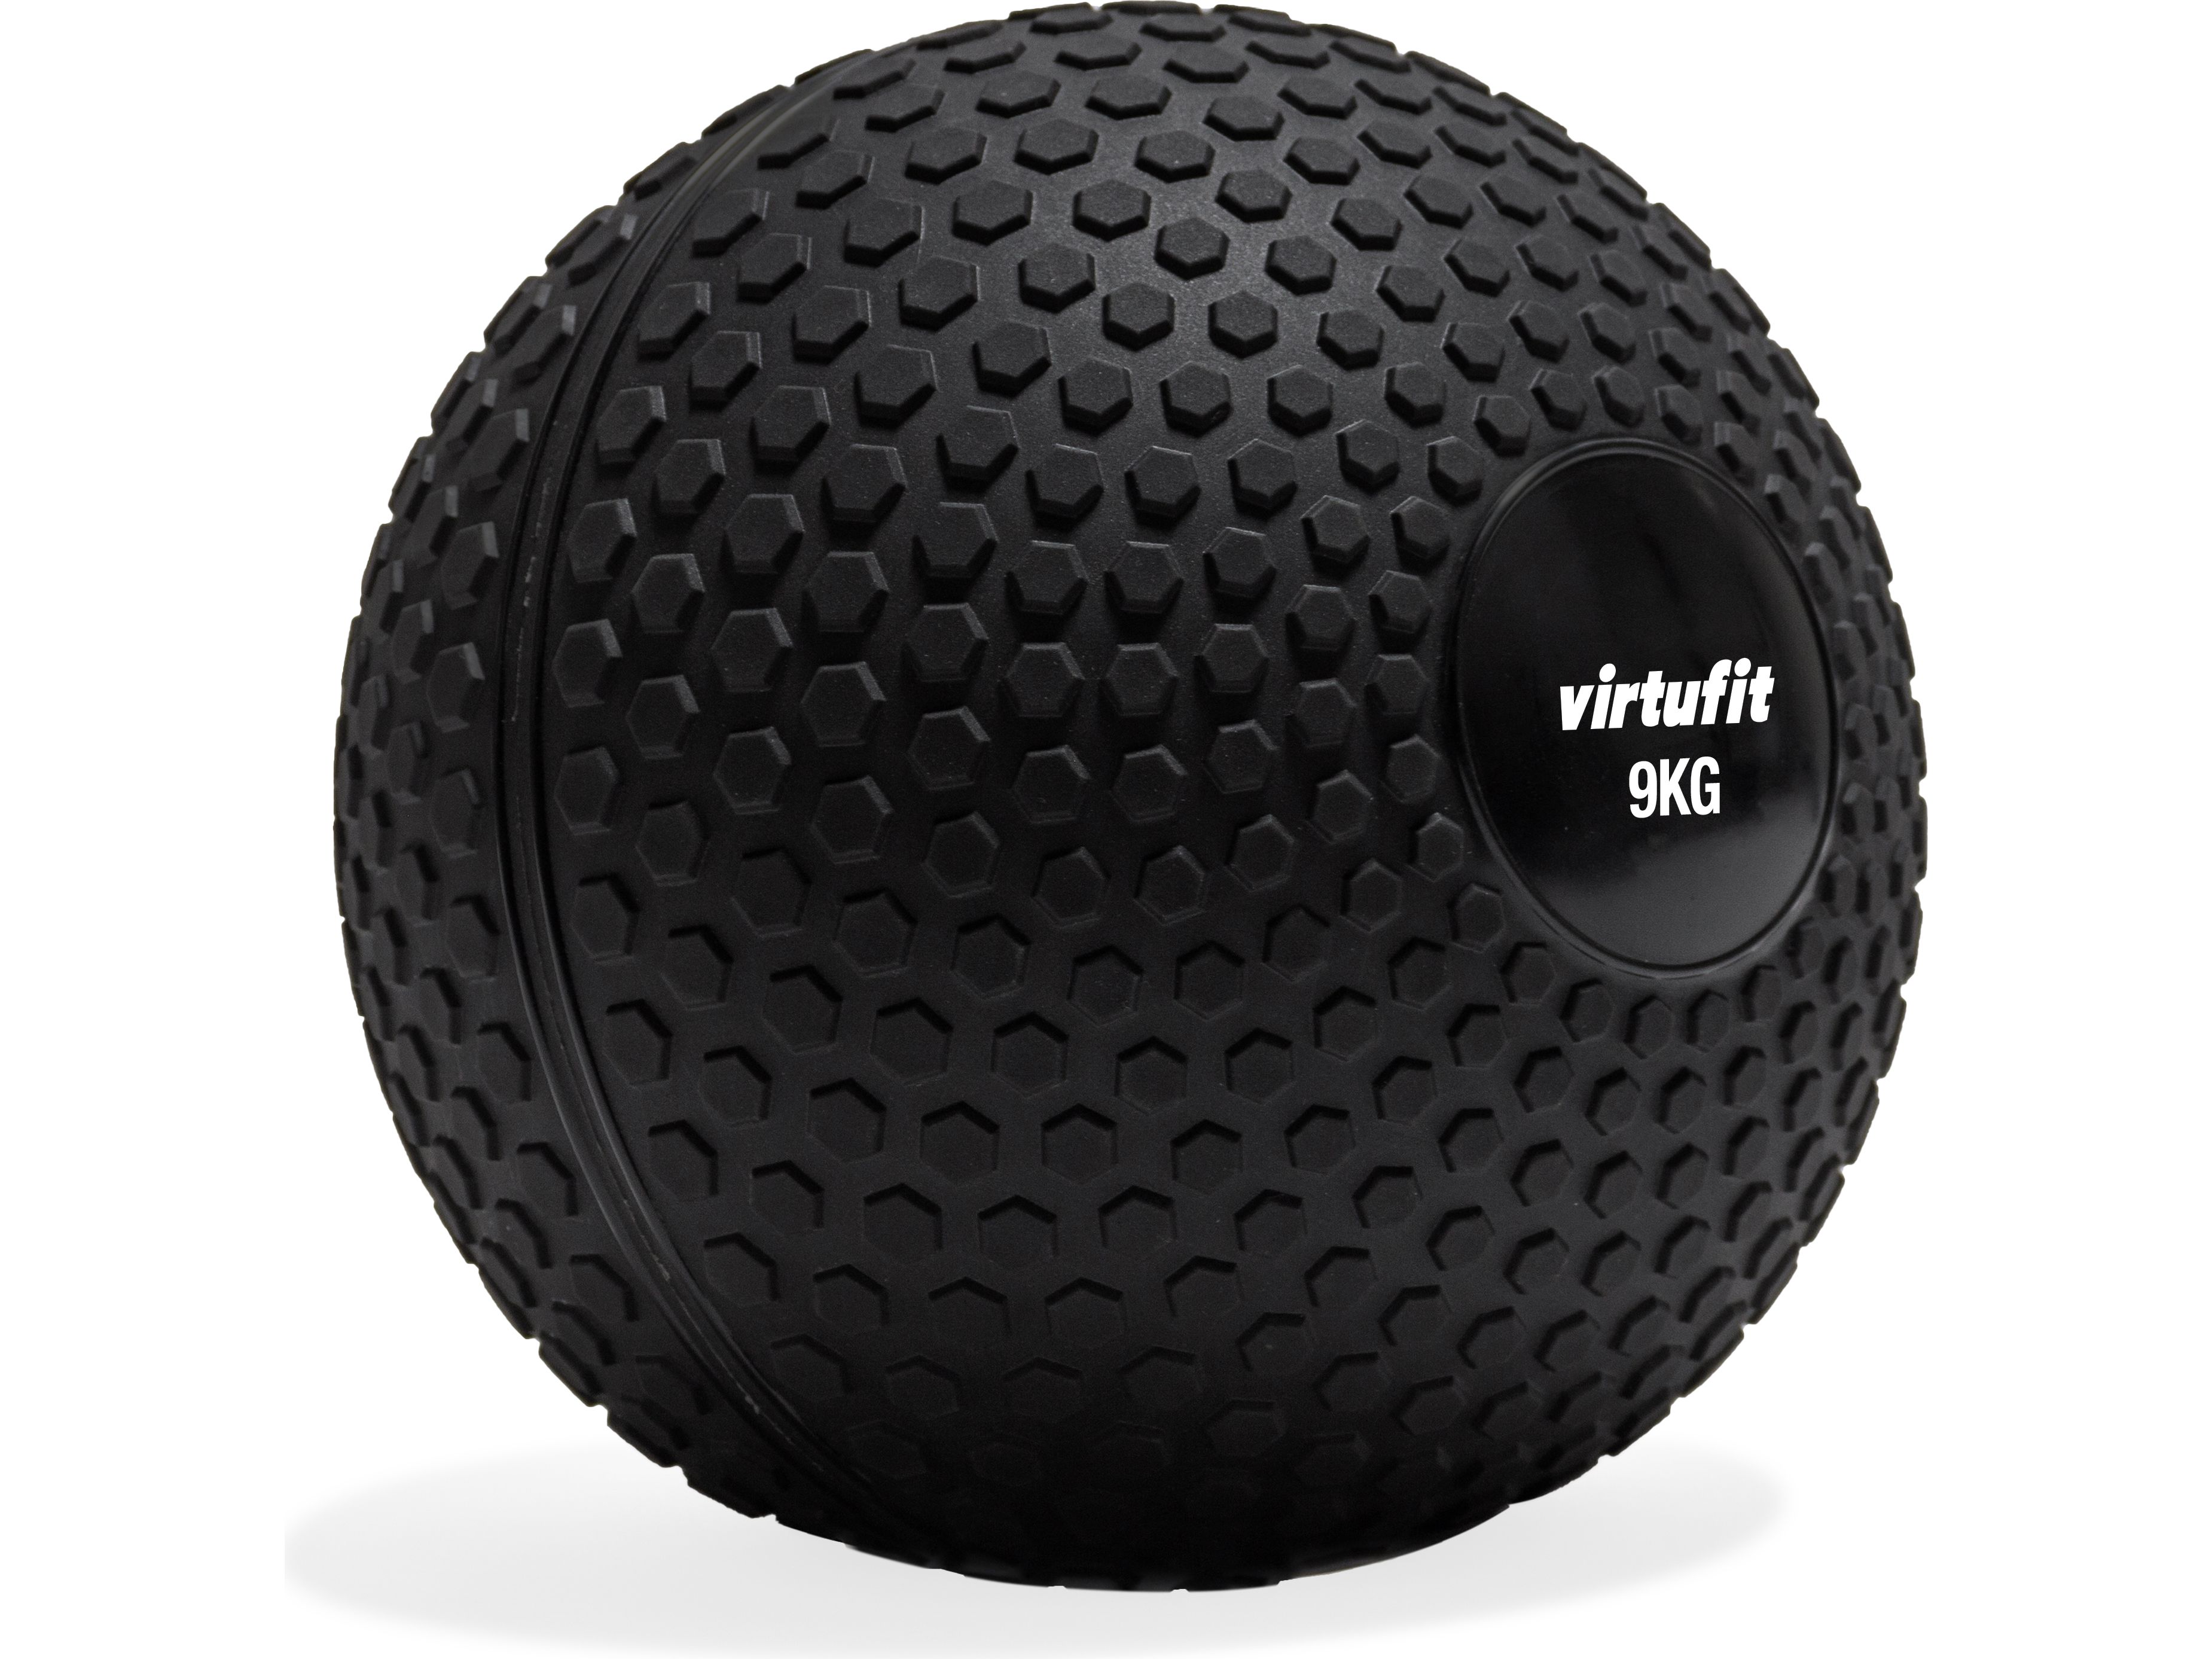 virtufit-slam-ball-crossfit-ball-9-kg